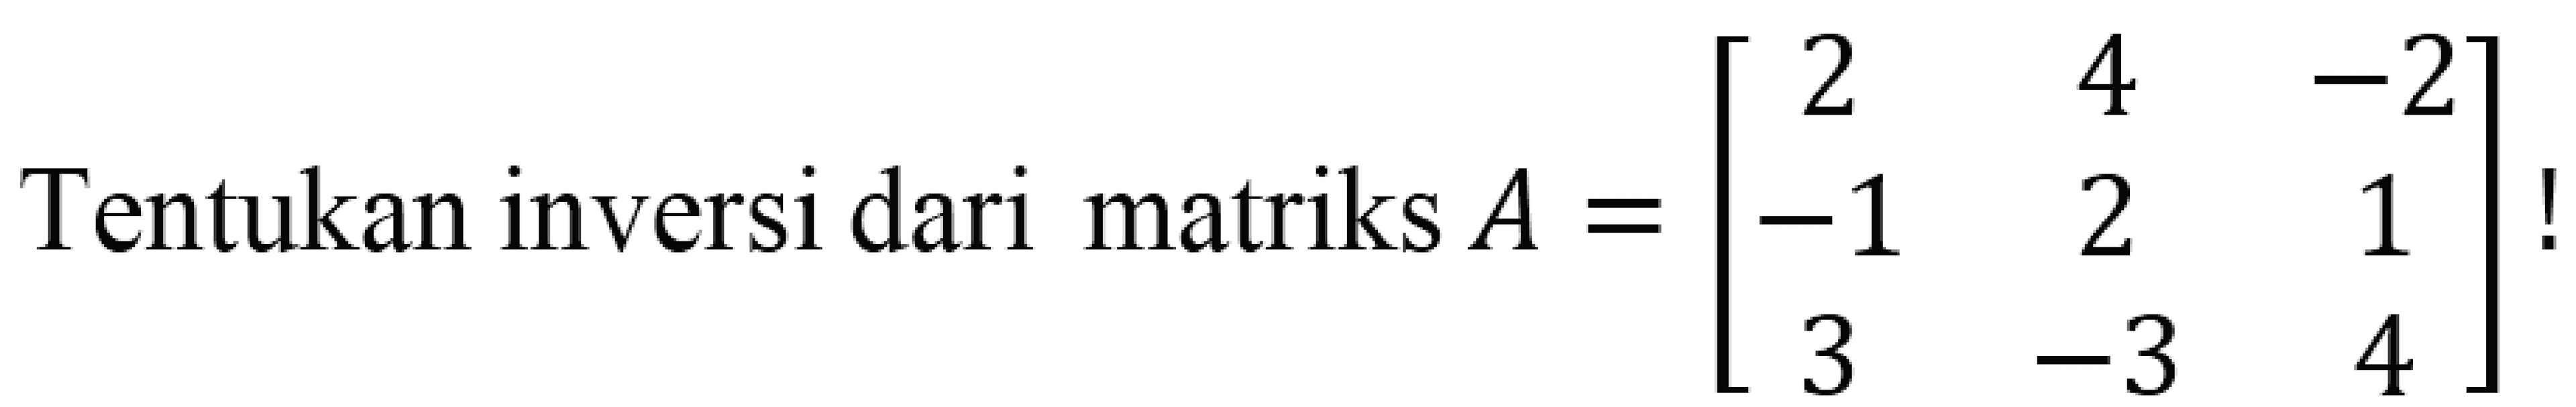 Tentukan inversi dari matriks A=[2 4 -2 -1 2 1 3 -3 4]!